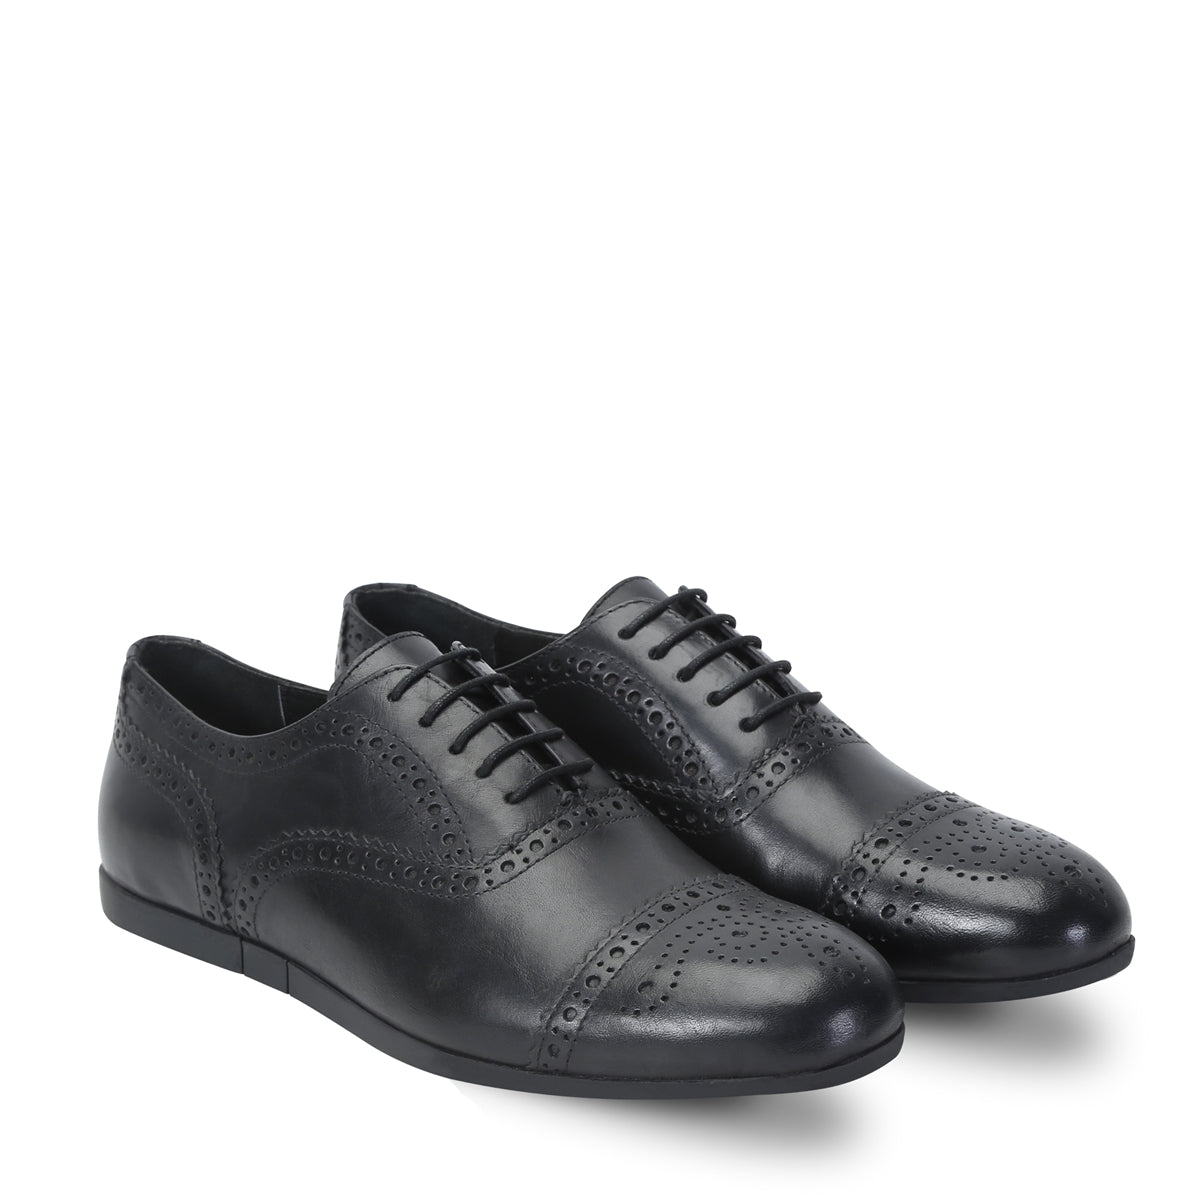 Black Genuine Leather Sneakers By Brune & Bareskin